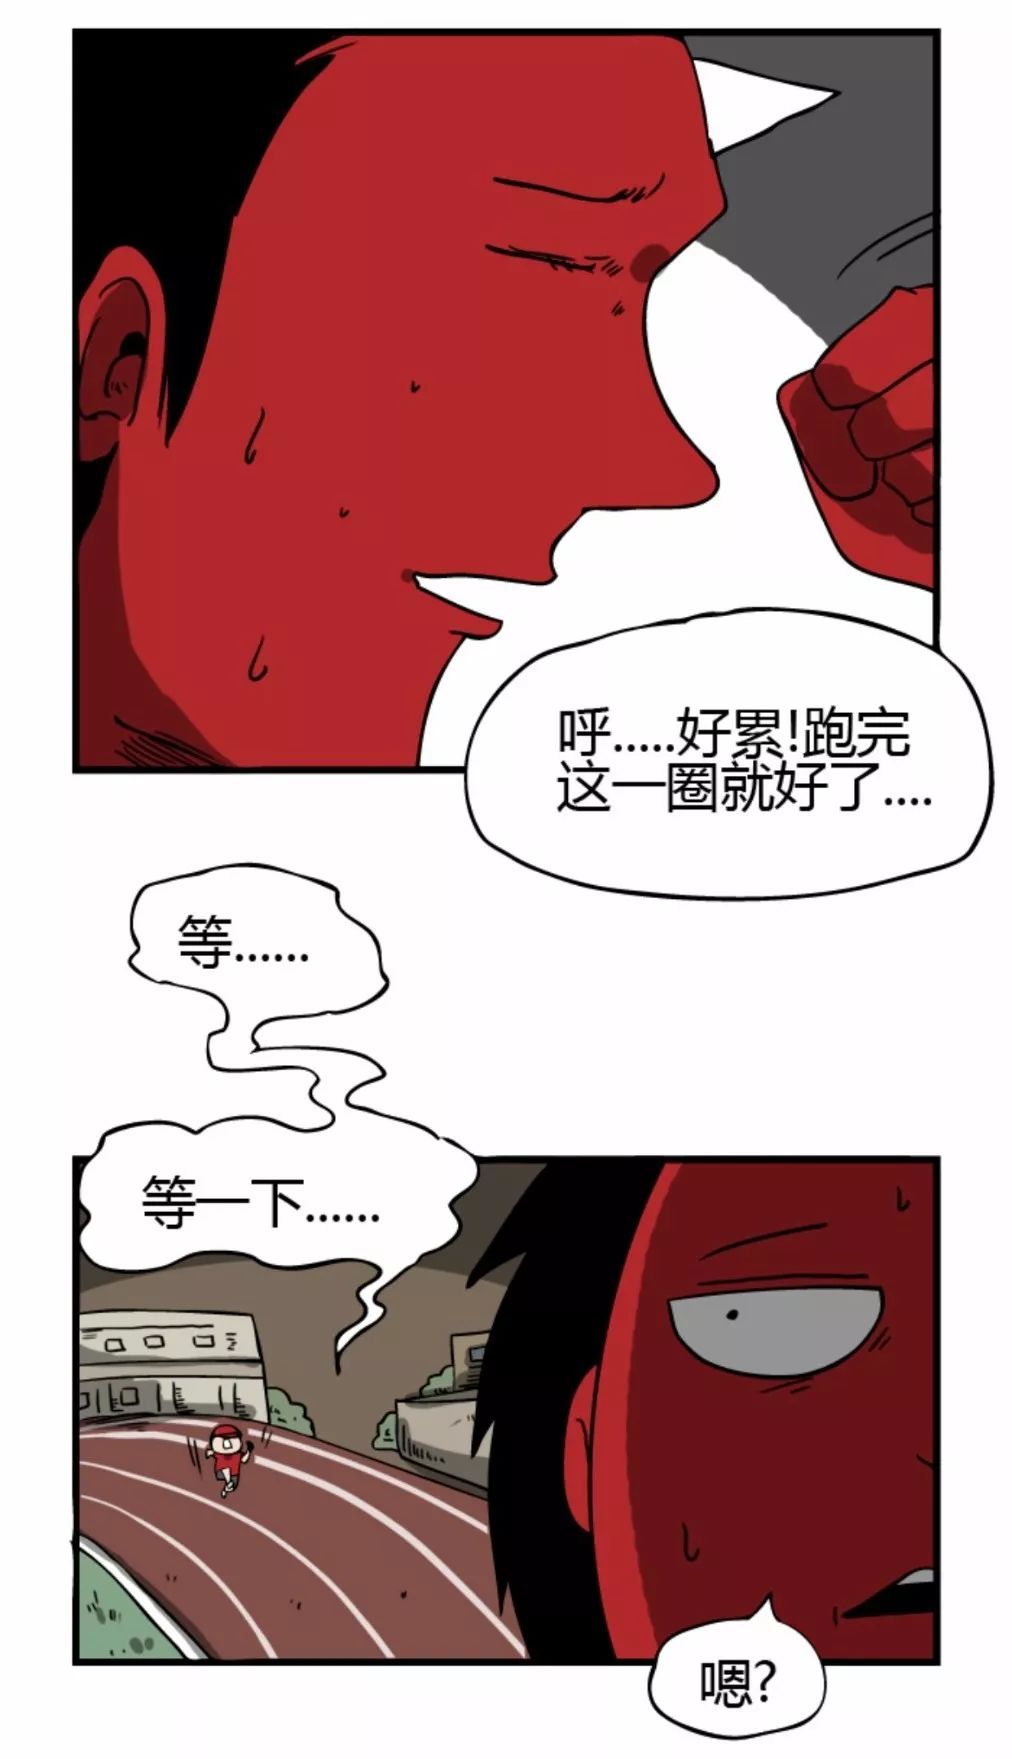 【靈異漫畫】《跑步》染紅帽的小男孩 靈異 第4張